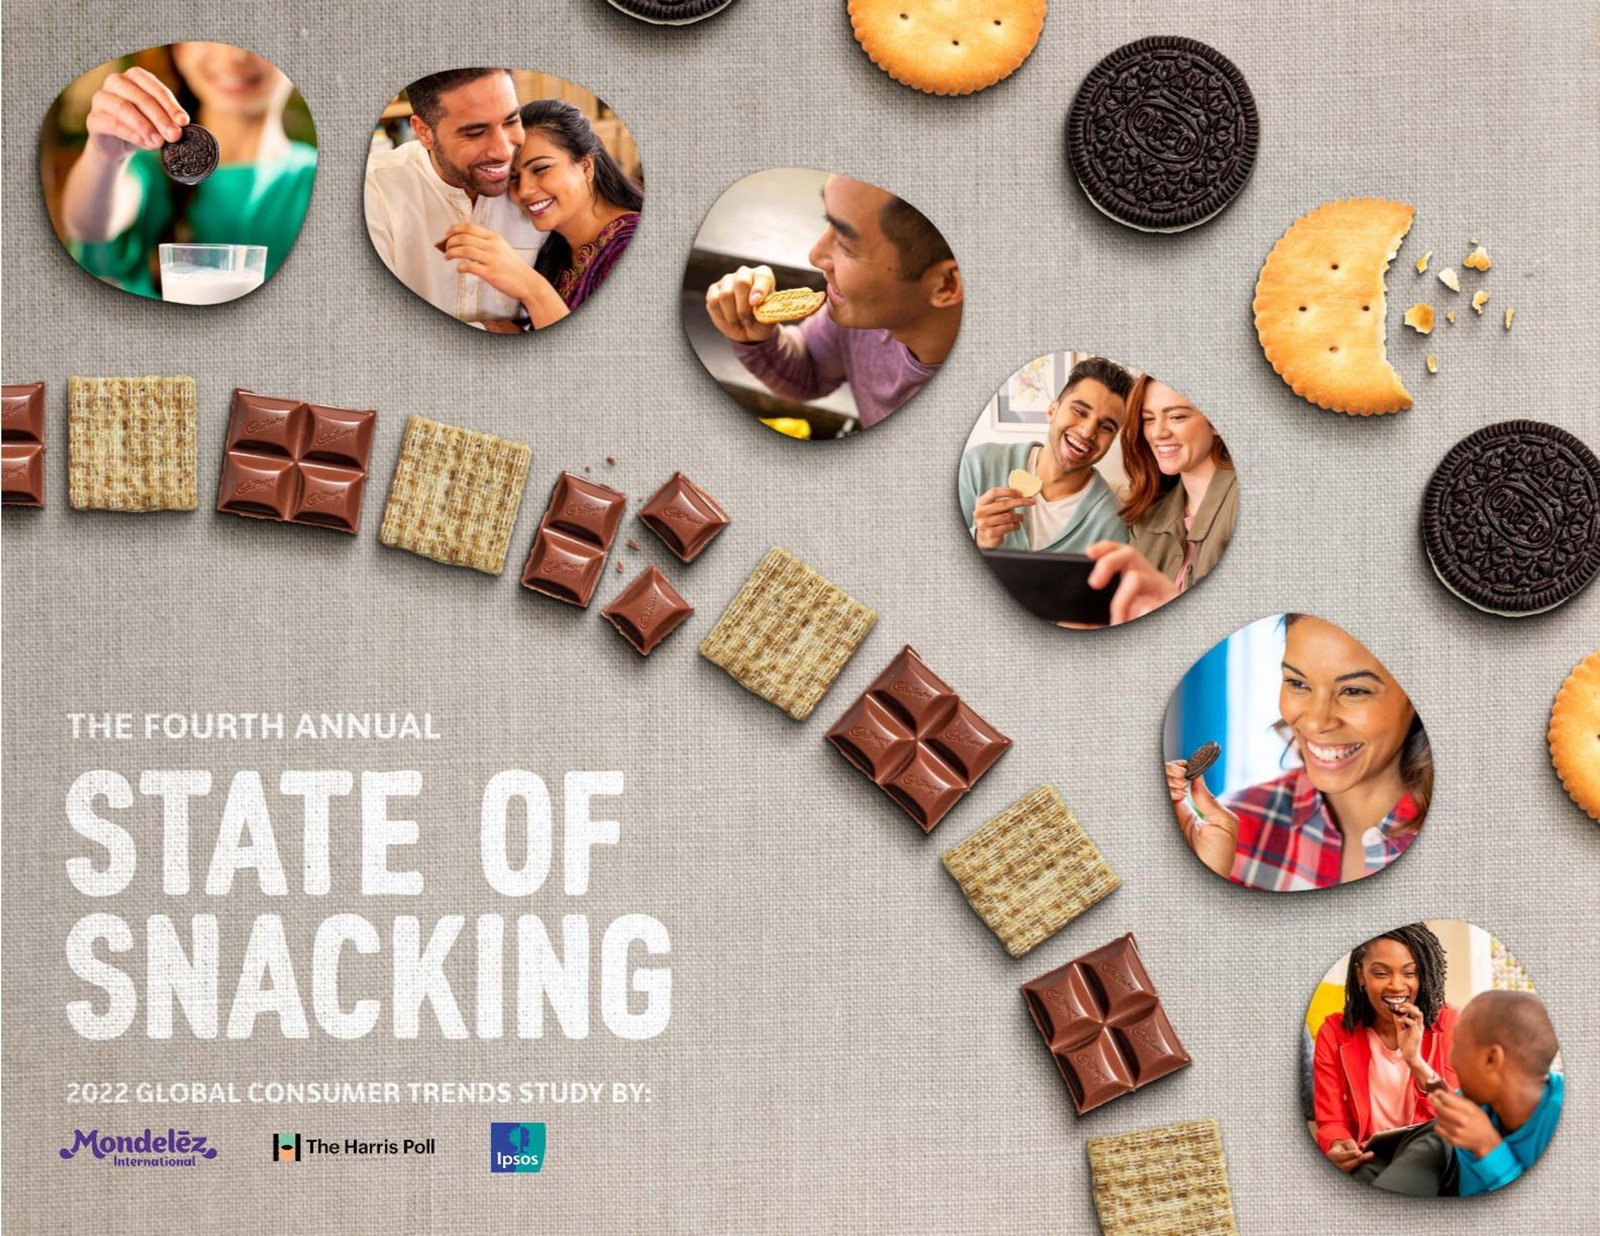 Mondelēz International objavio četvrti godišnji izvještaj ‘State of snacking‘